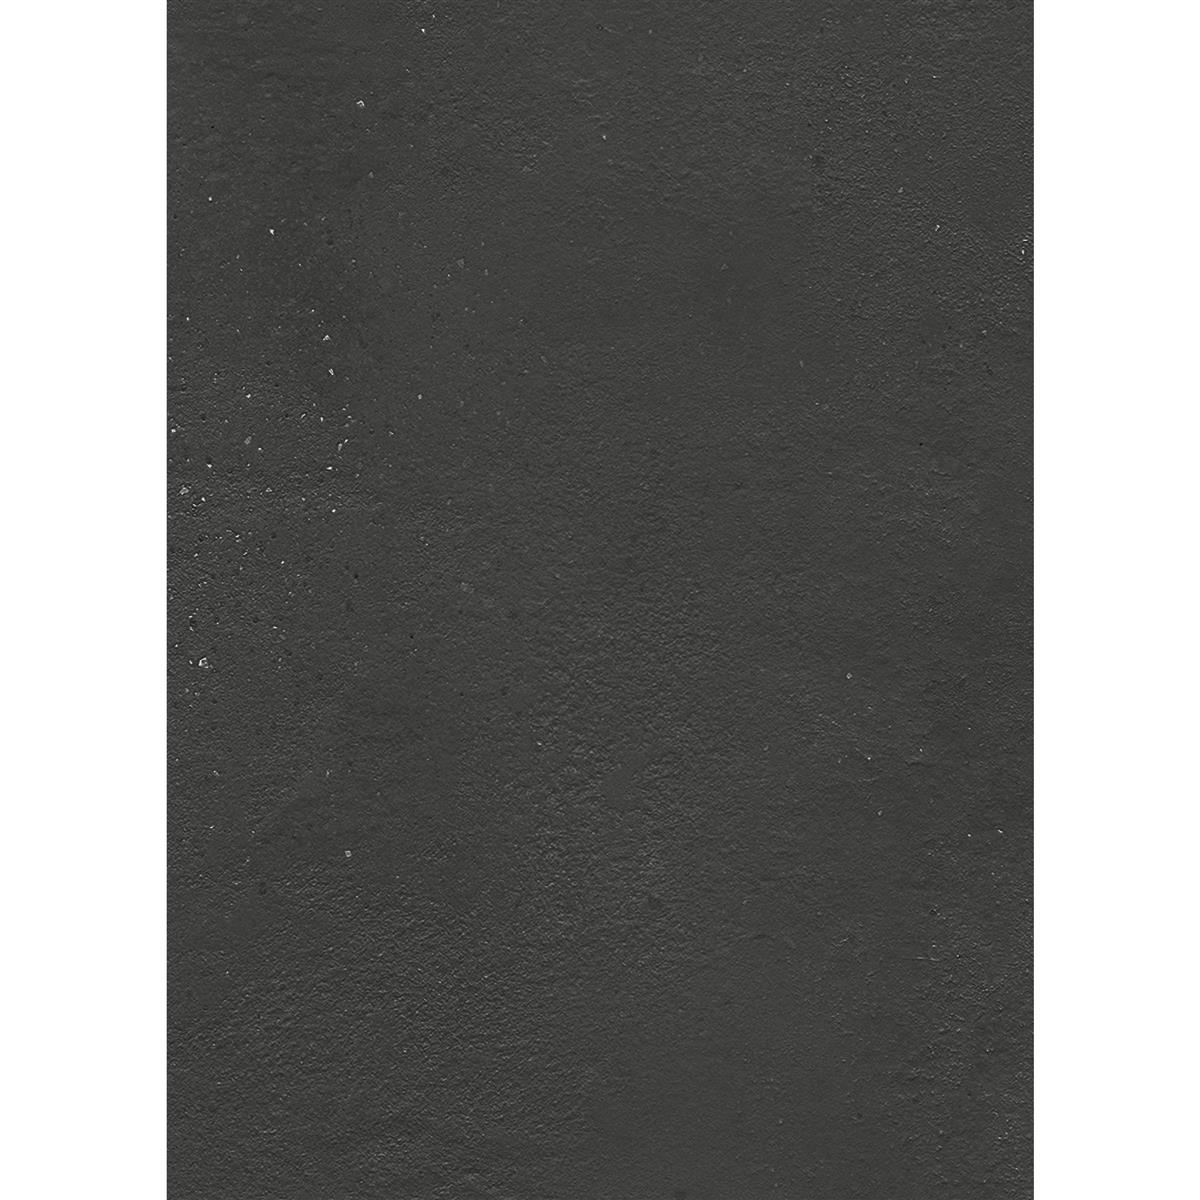 Piastrelle Malibu Cemento Ottica Antracite 60x120cm